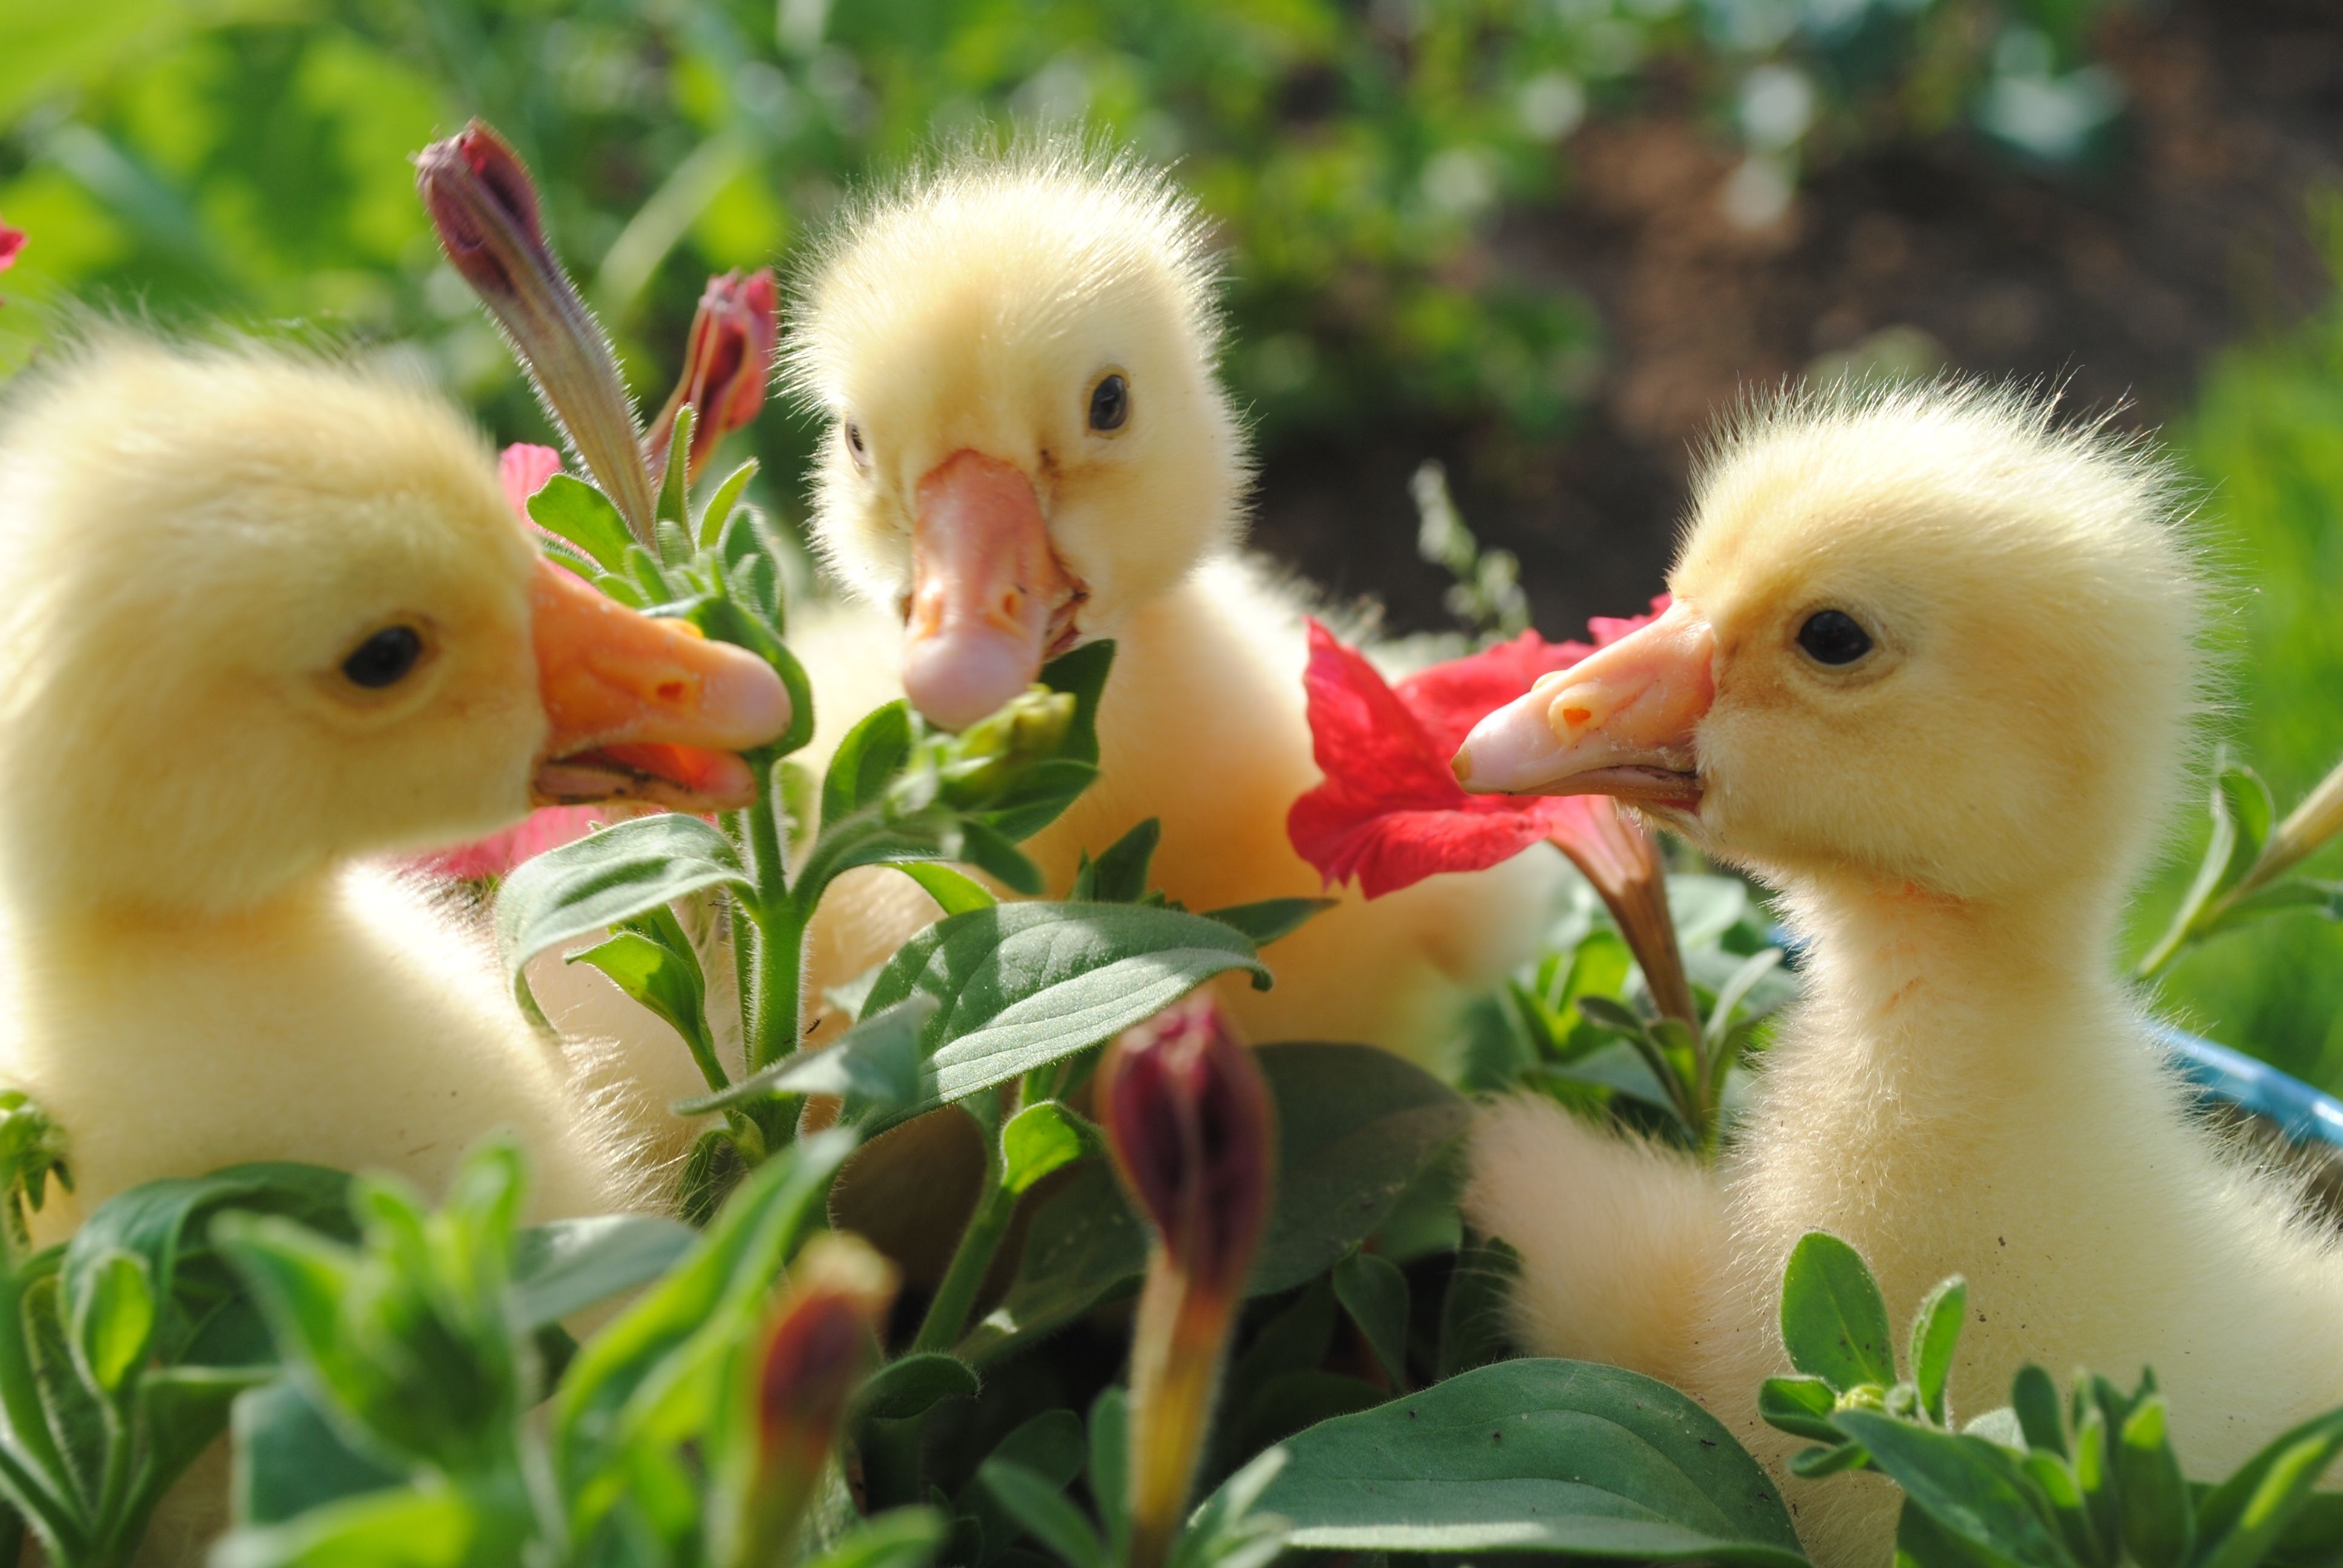 flowers, animals, food, beak, ducklings